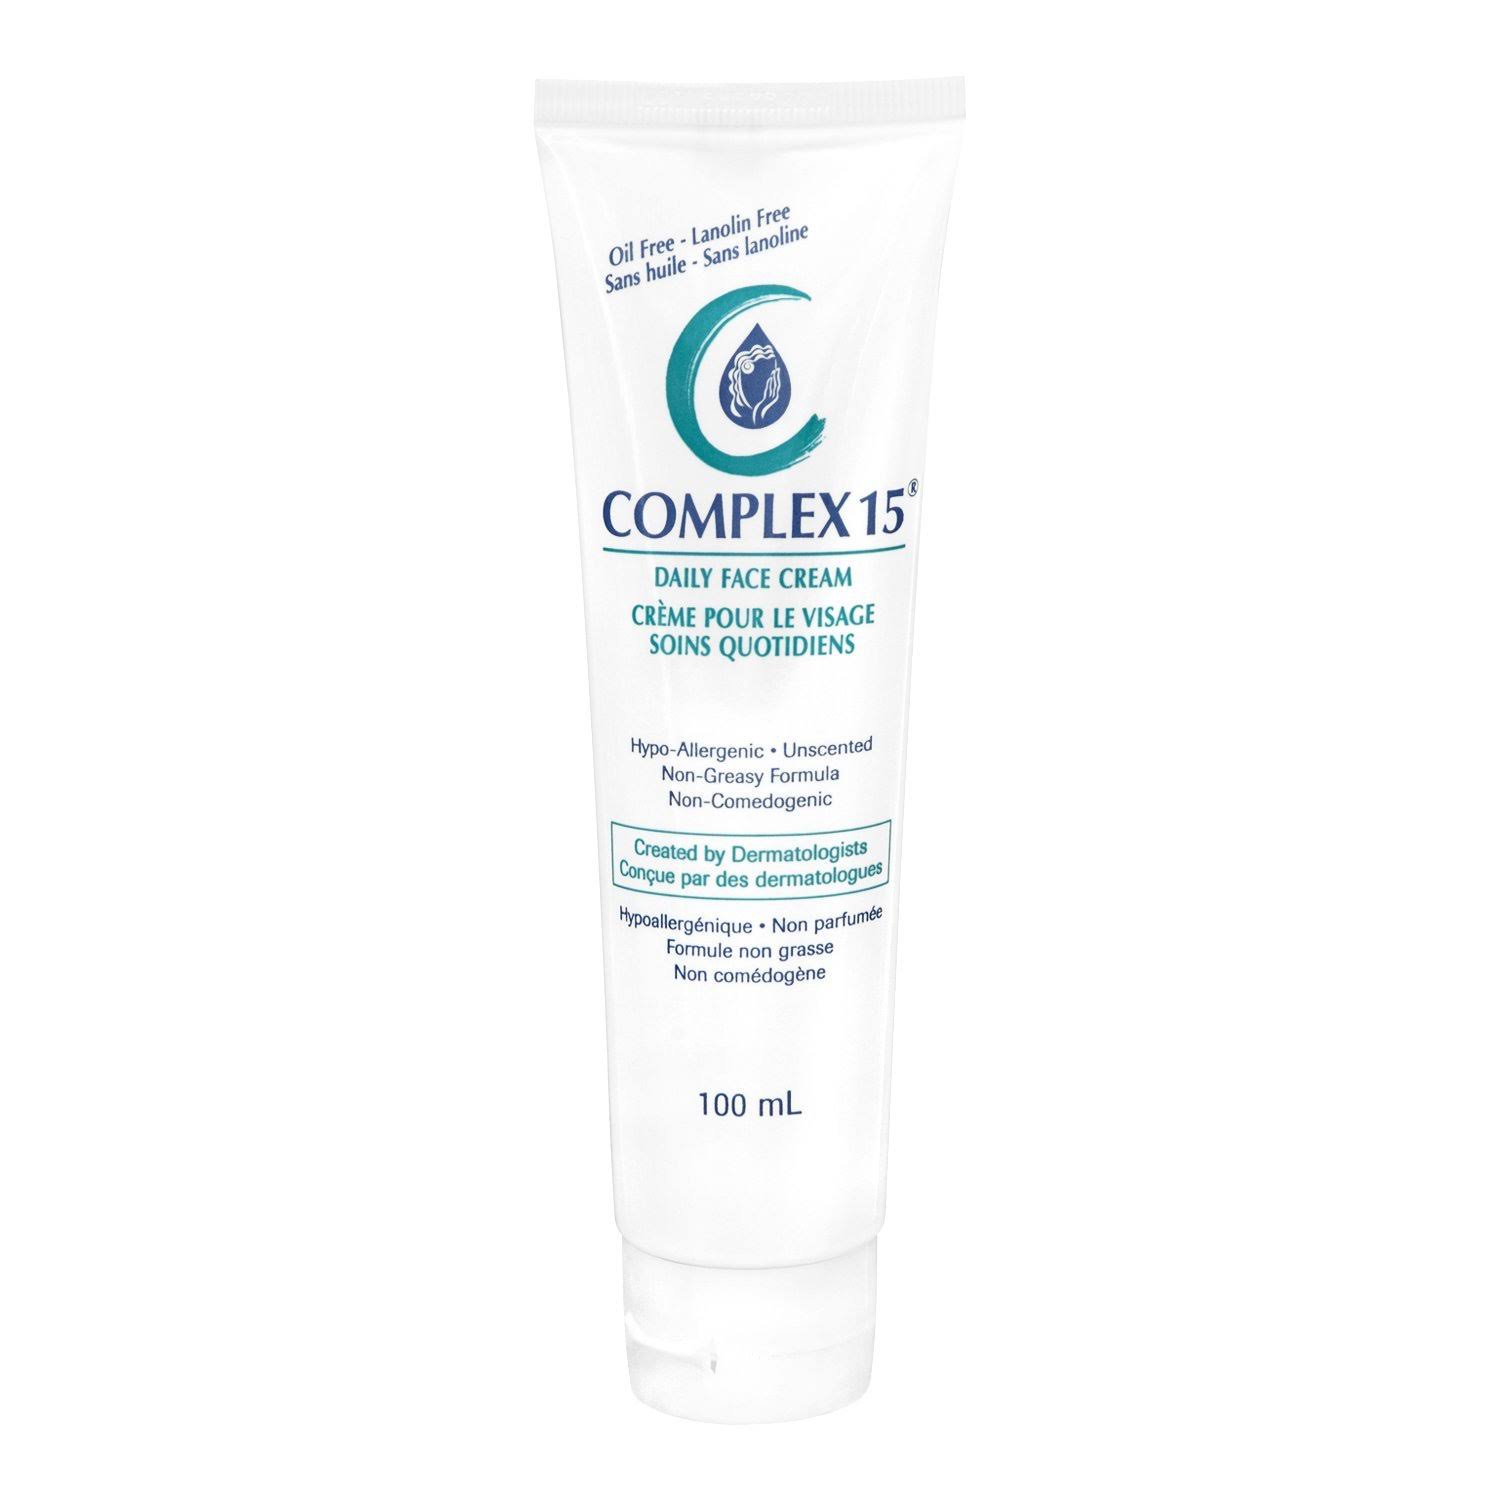 Complex 15 Daily Face Cream - 3.4oz